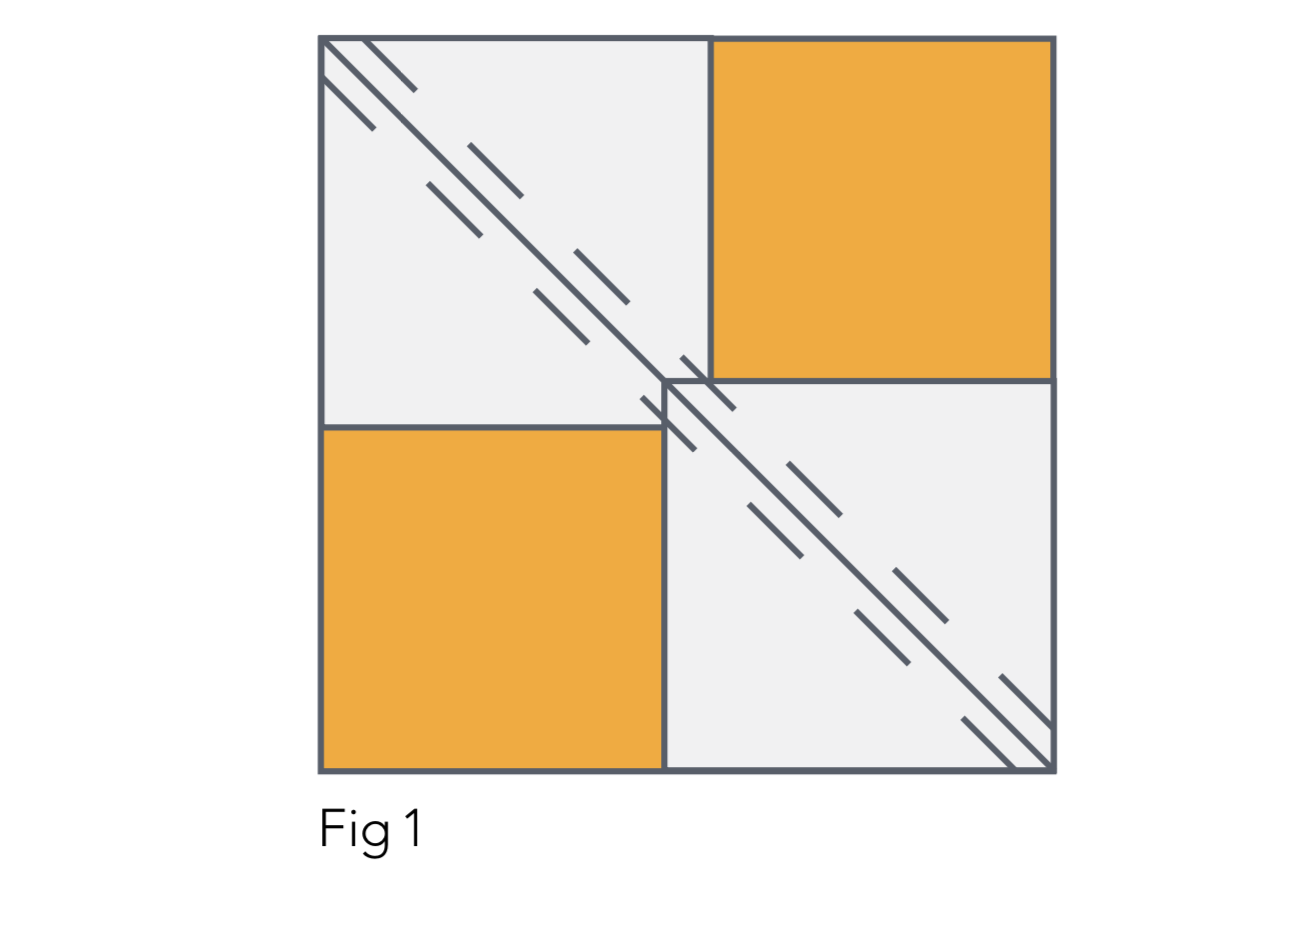 Strip quilt pattern Figure 1